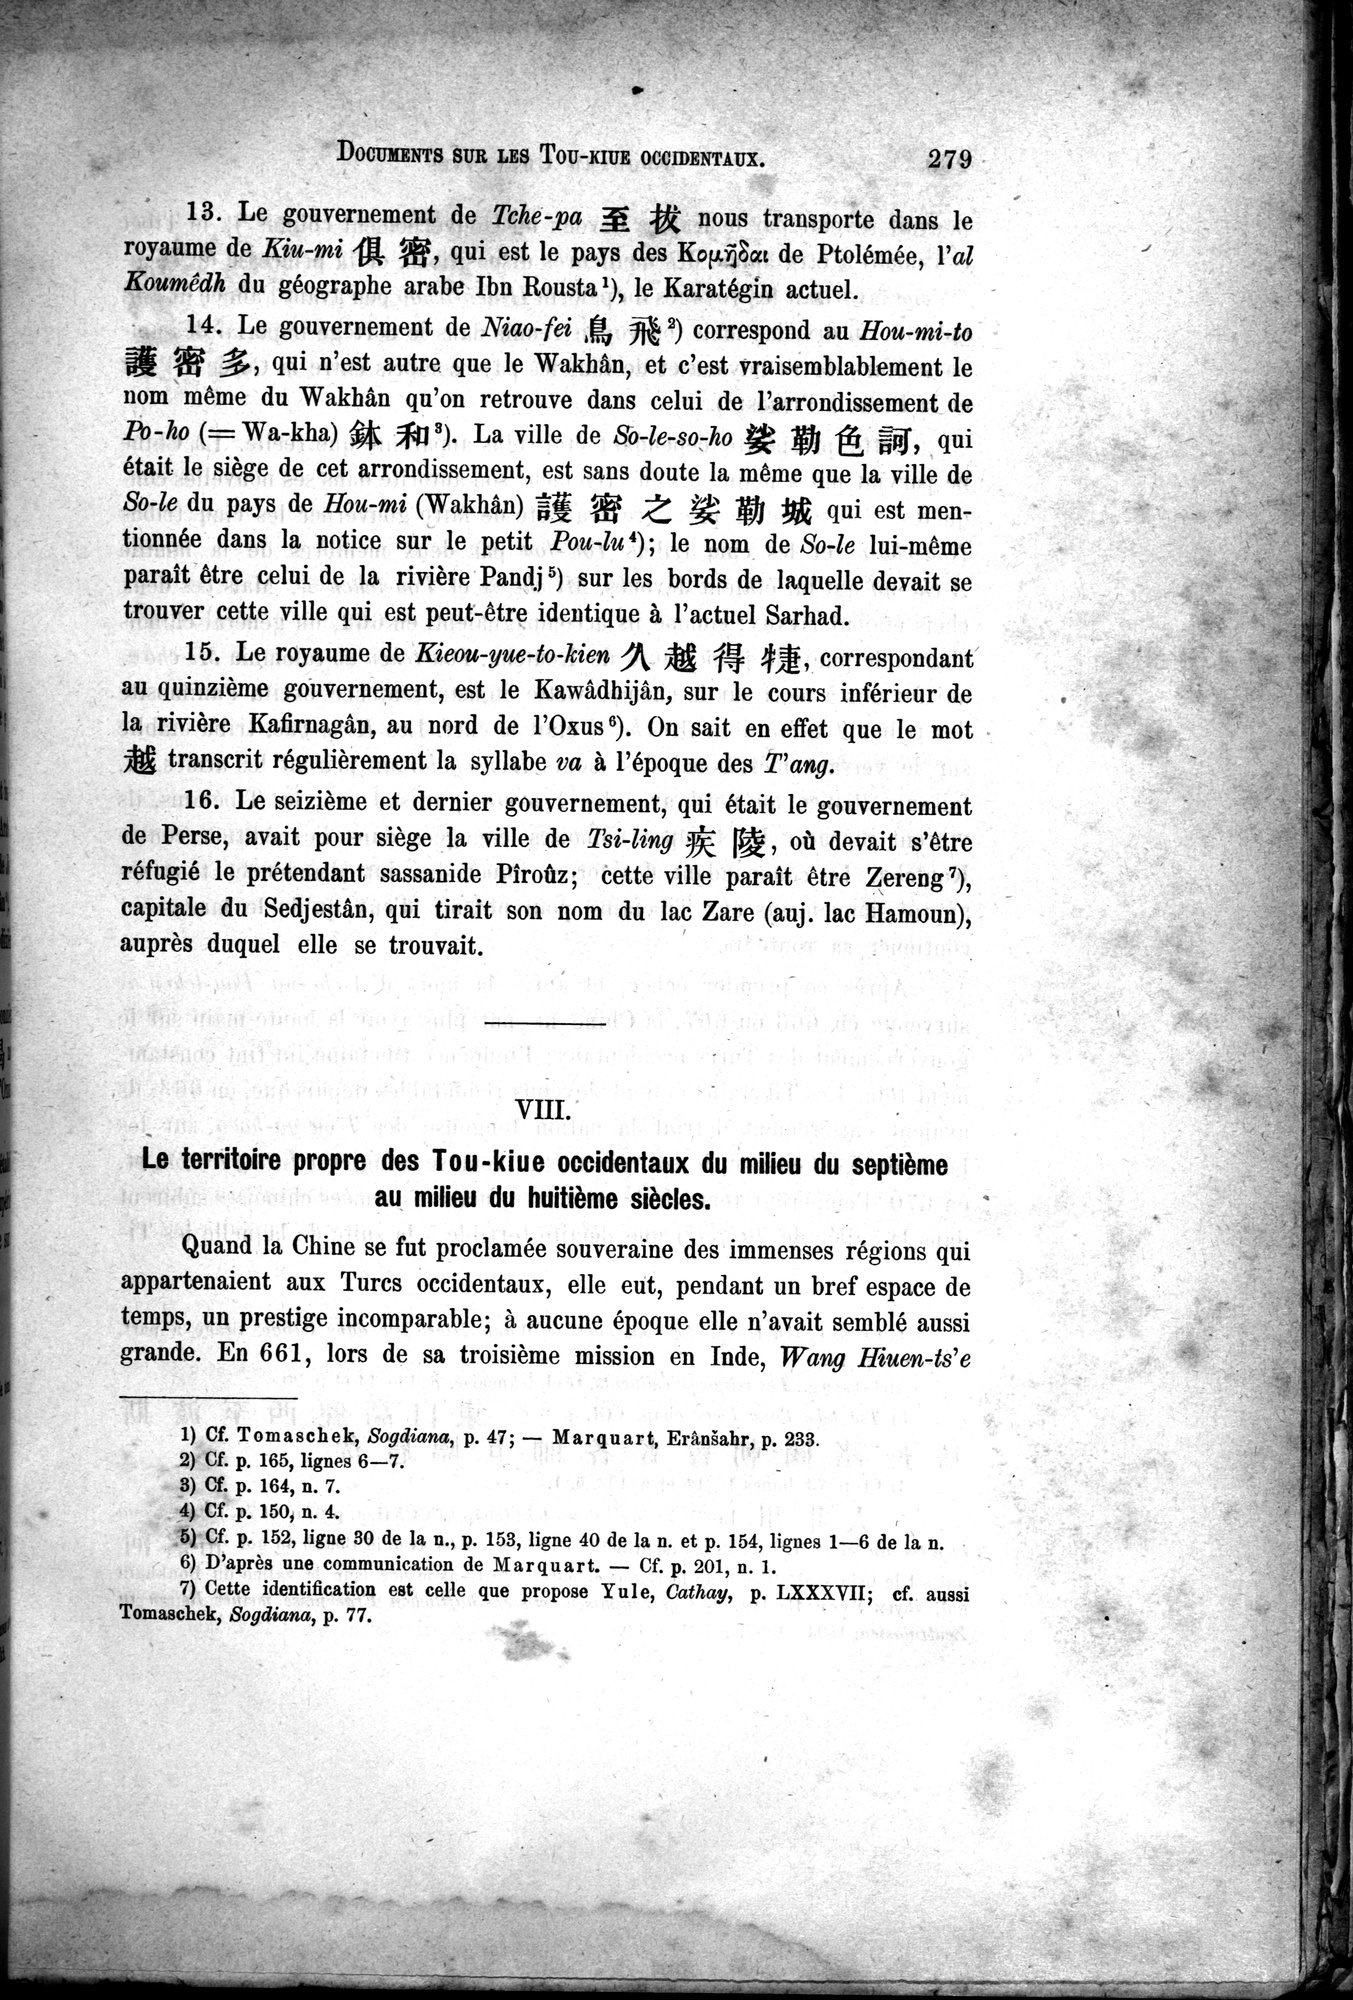 Documents sur les Tou-kiue (Turcs) occidentaux : vol.1 / Page 289 (Grayscale High Resolution Image)